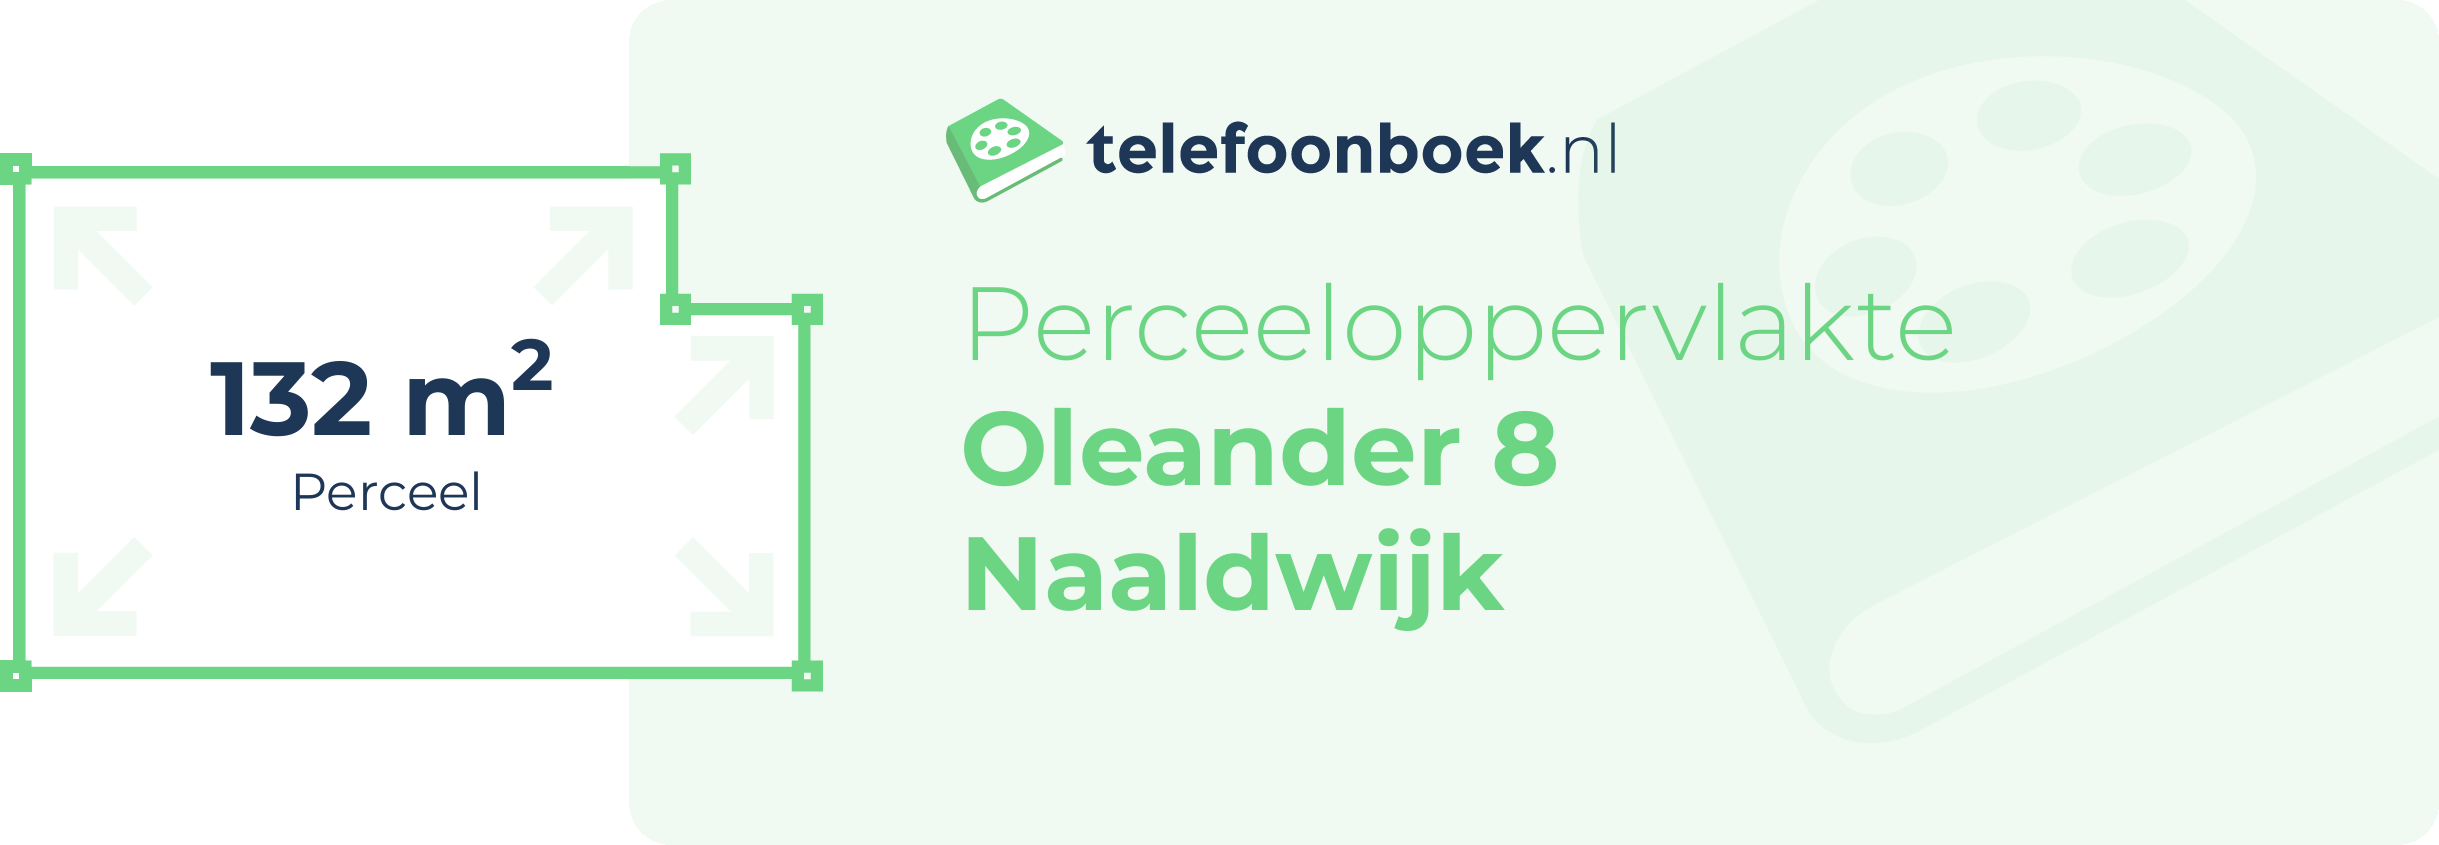 Perceeloppervlakte Oleander 8 Naaldwijk